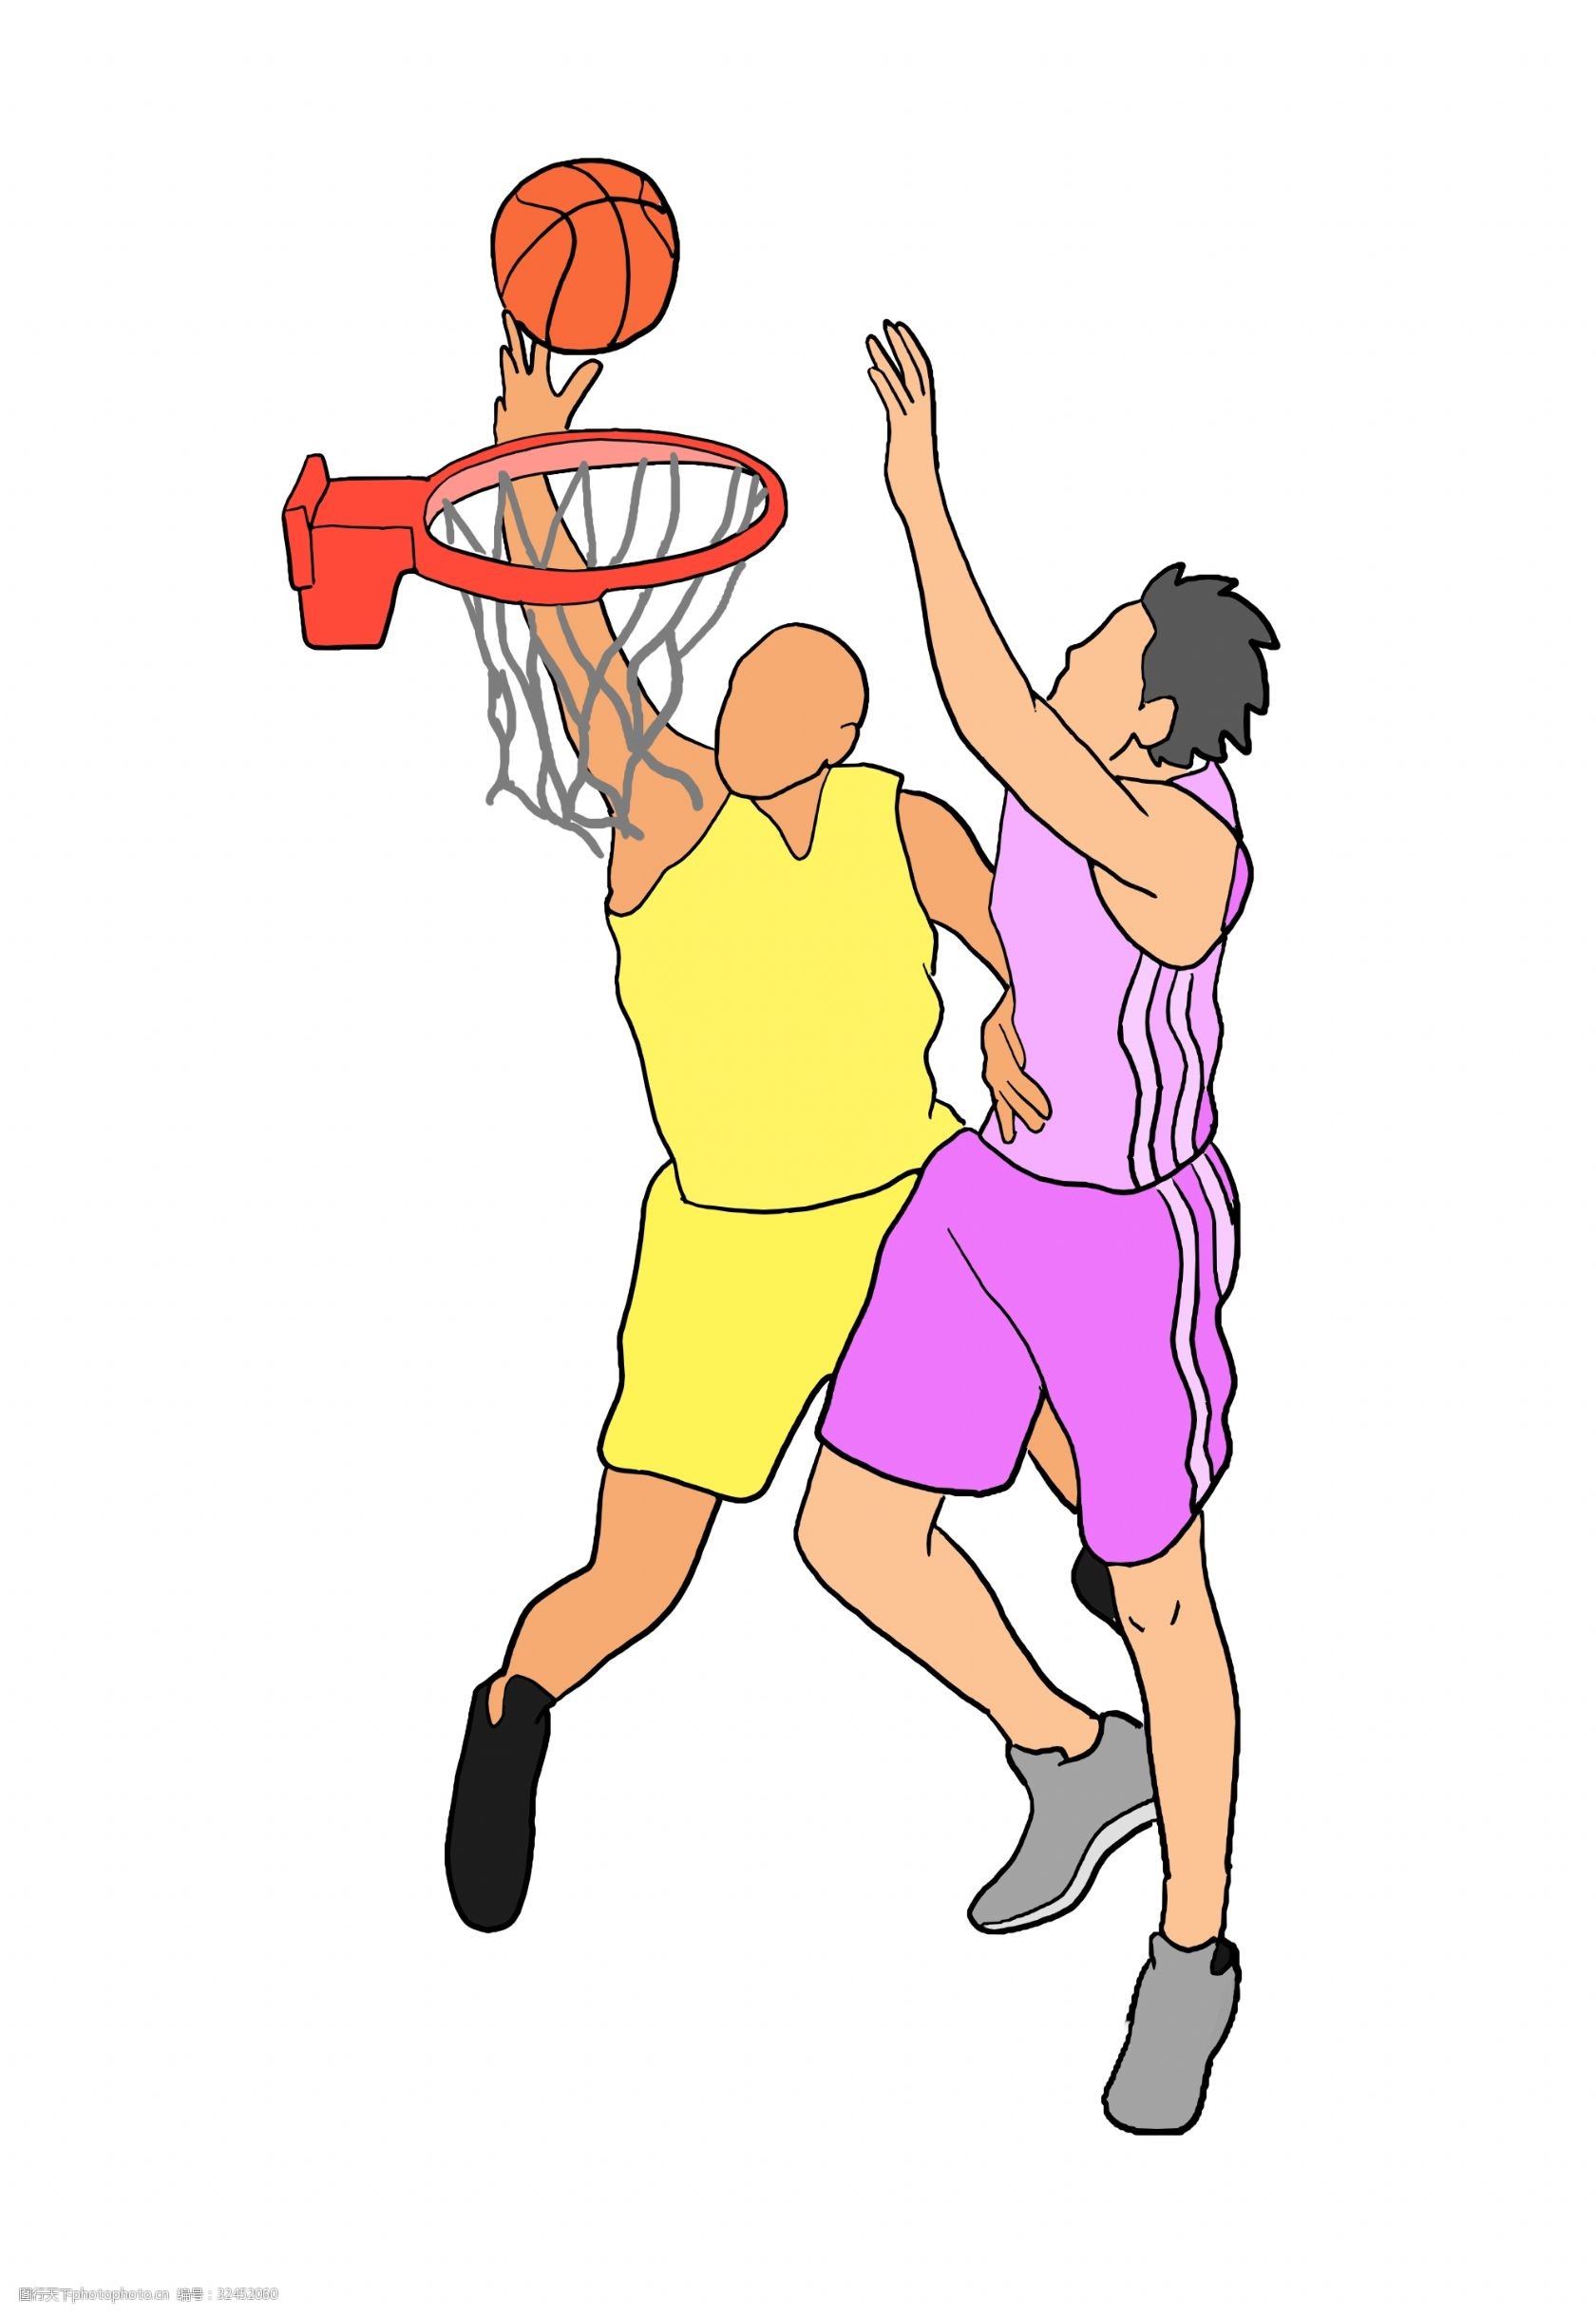 Animated Basketball Dunk